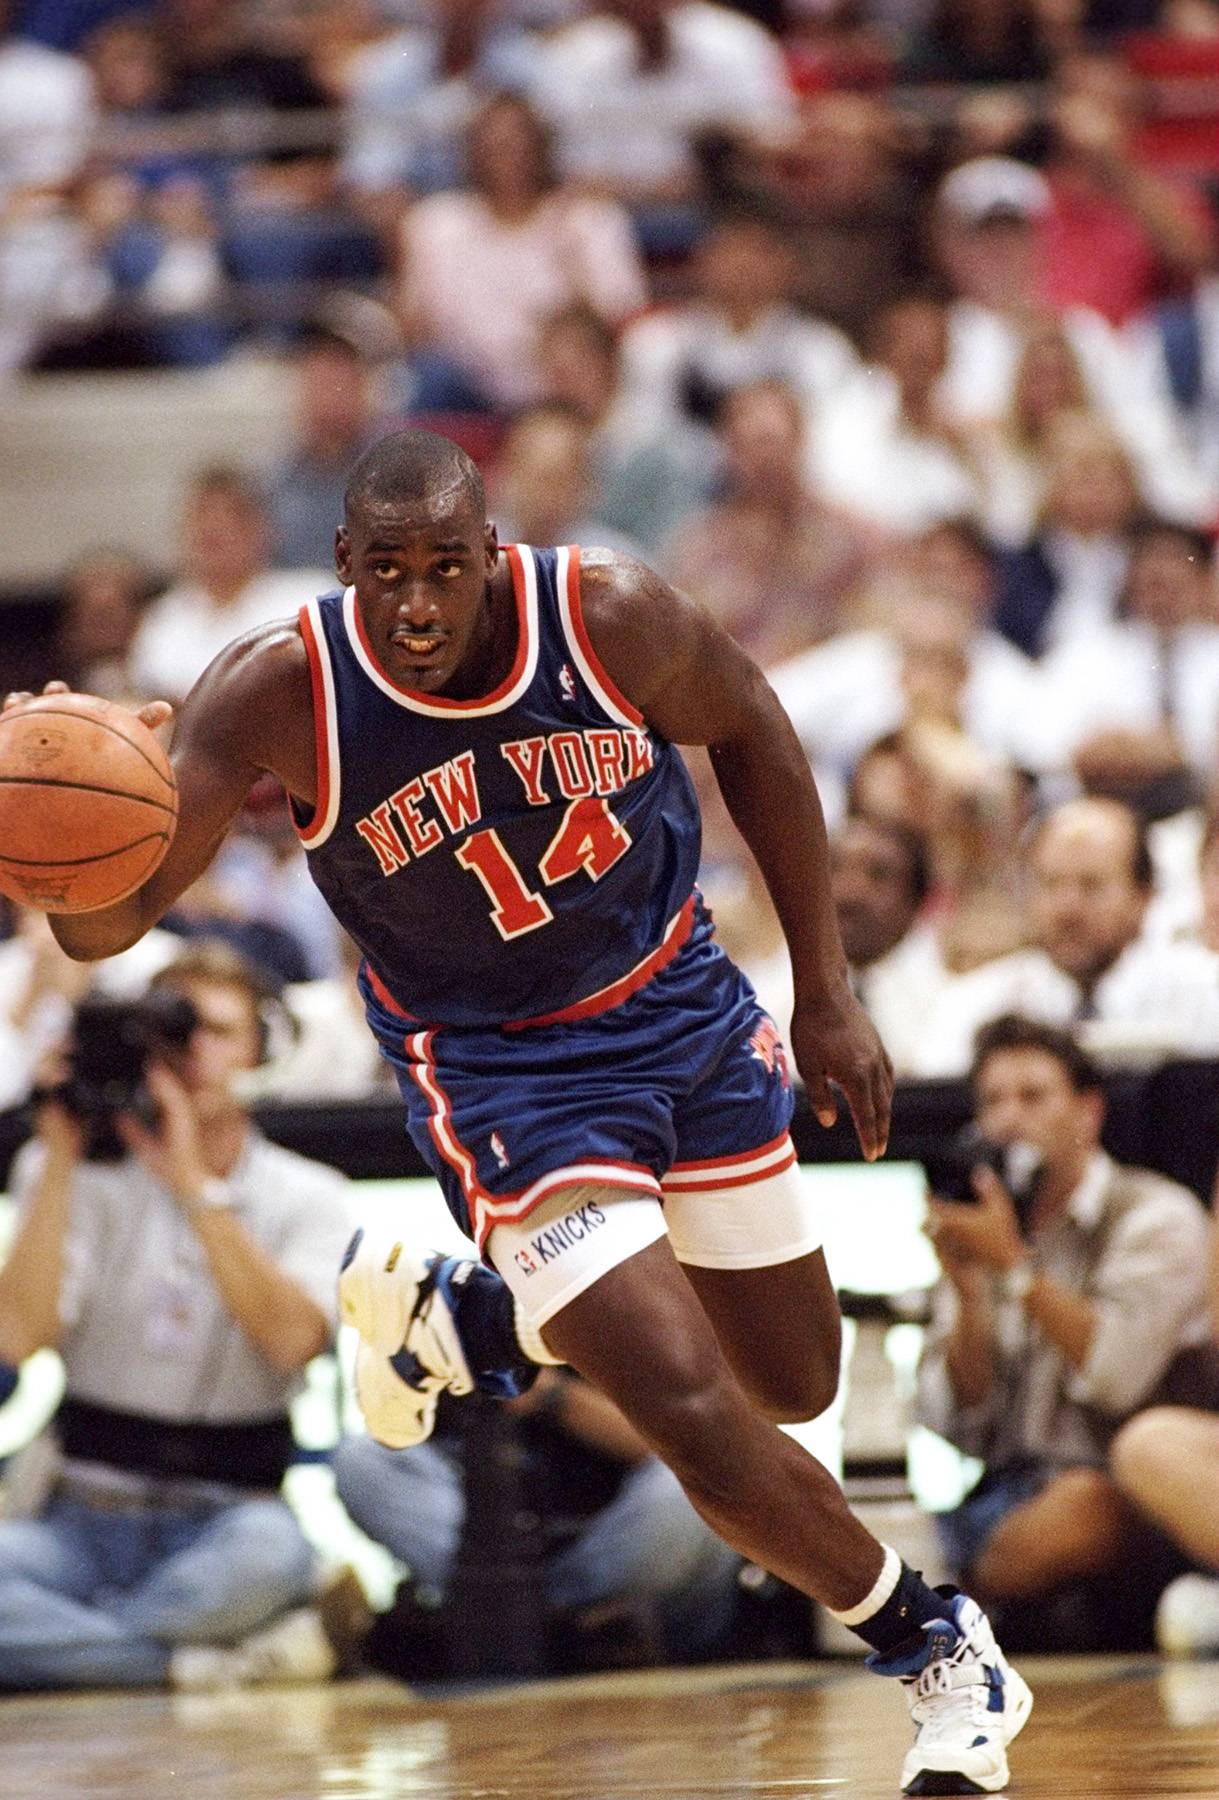 John Starks: The Heart & Soul Of The 90s Knicks